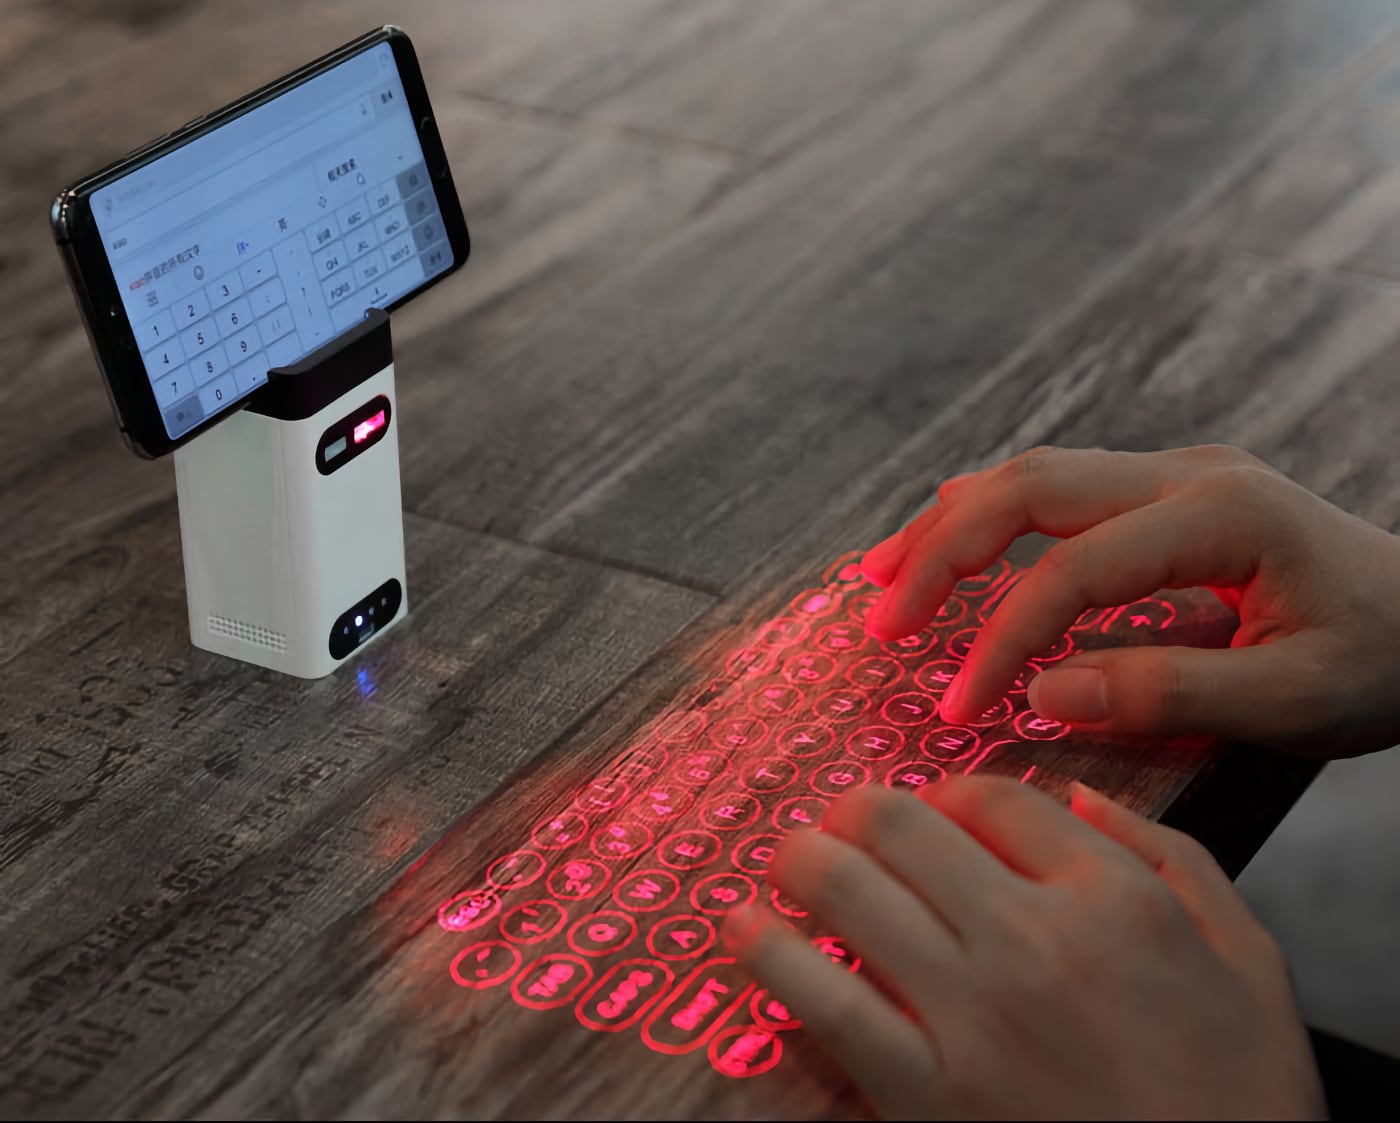 Вещь. Портативная лазерная клавиатура, которая проецирует кнопки на стол